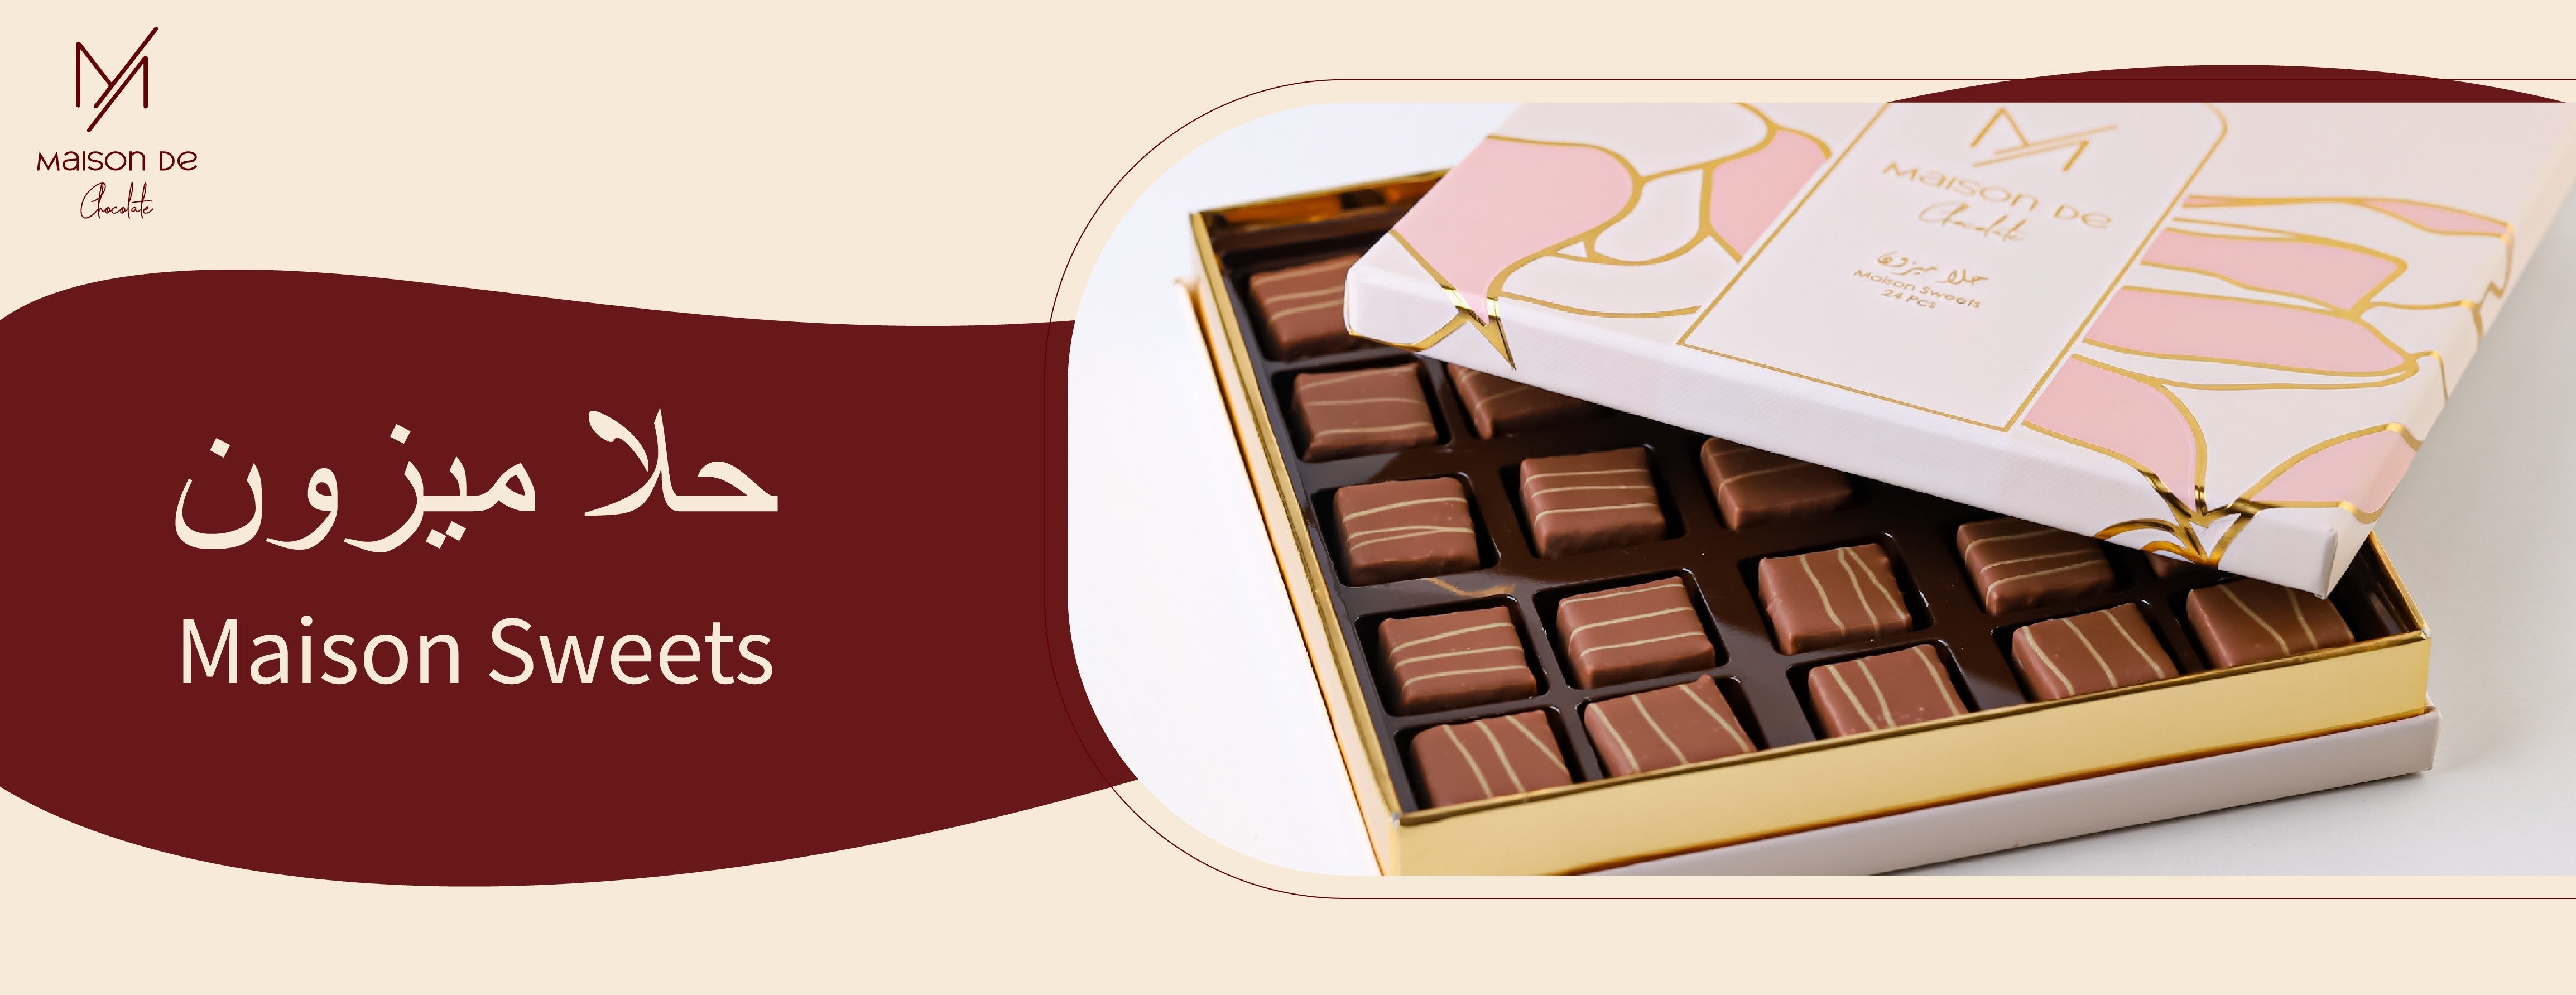 ميزون دي شوكلت - Maison De Chocolate image-slider-0